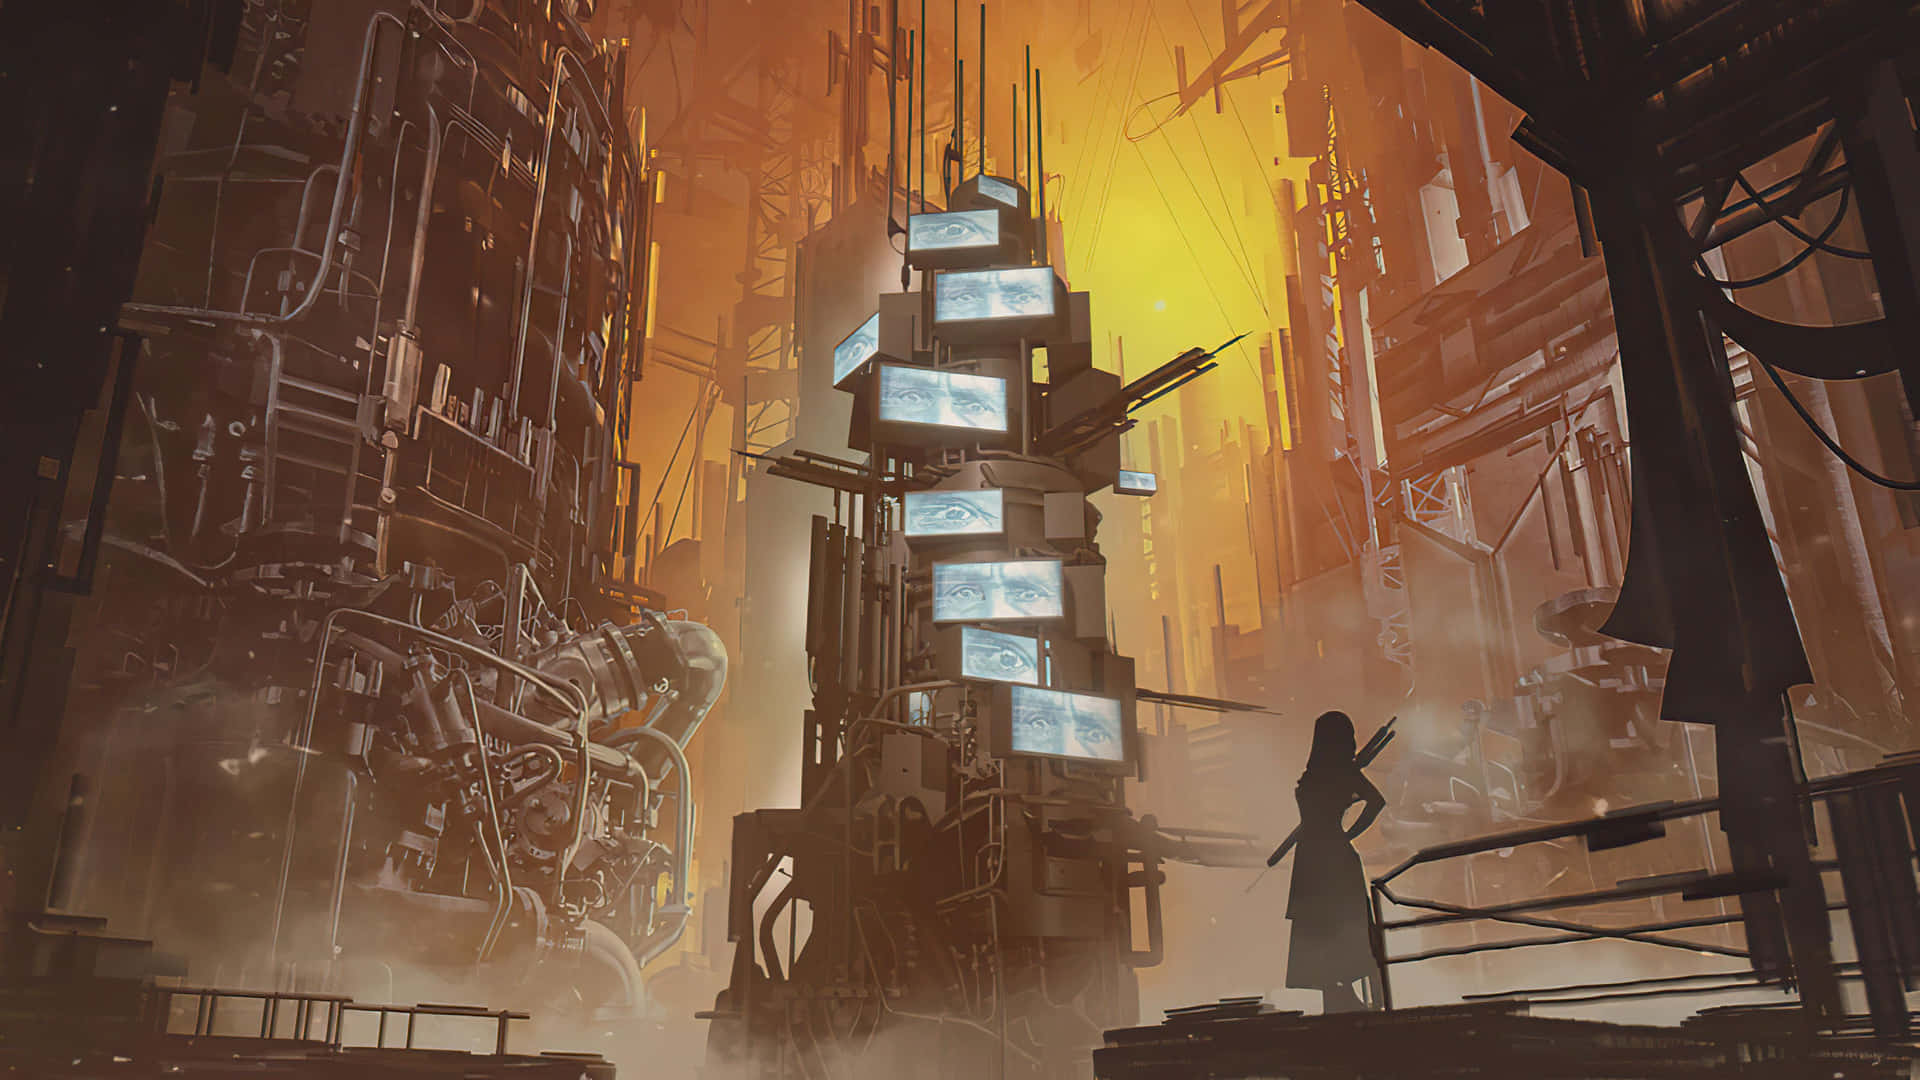 Dystopian Industrial Landscape.jpg Wallpaper